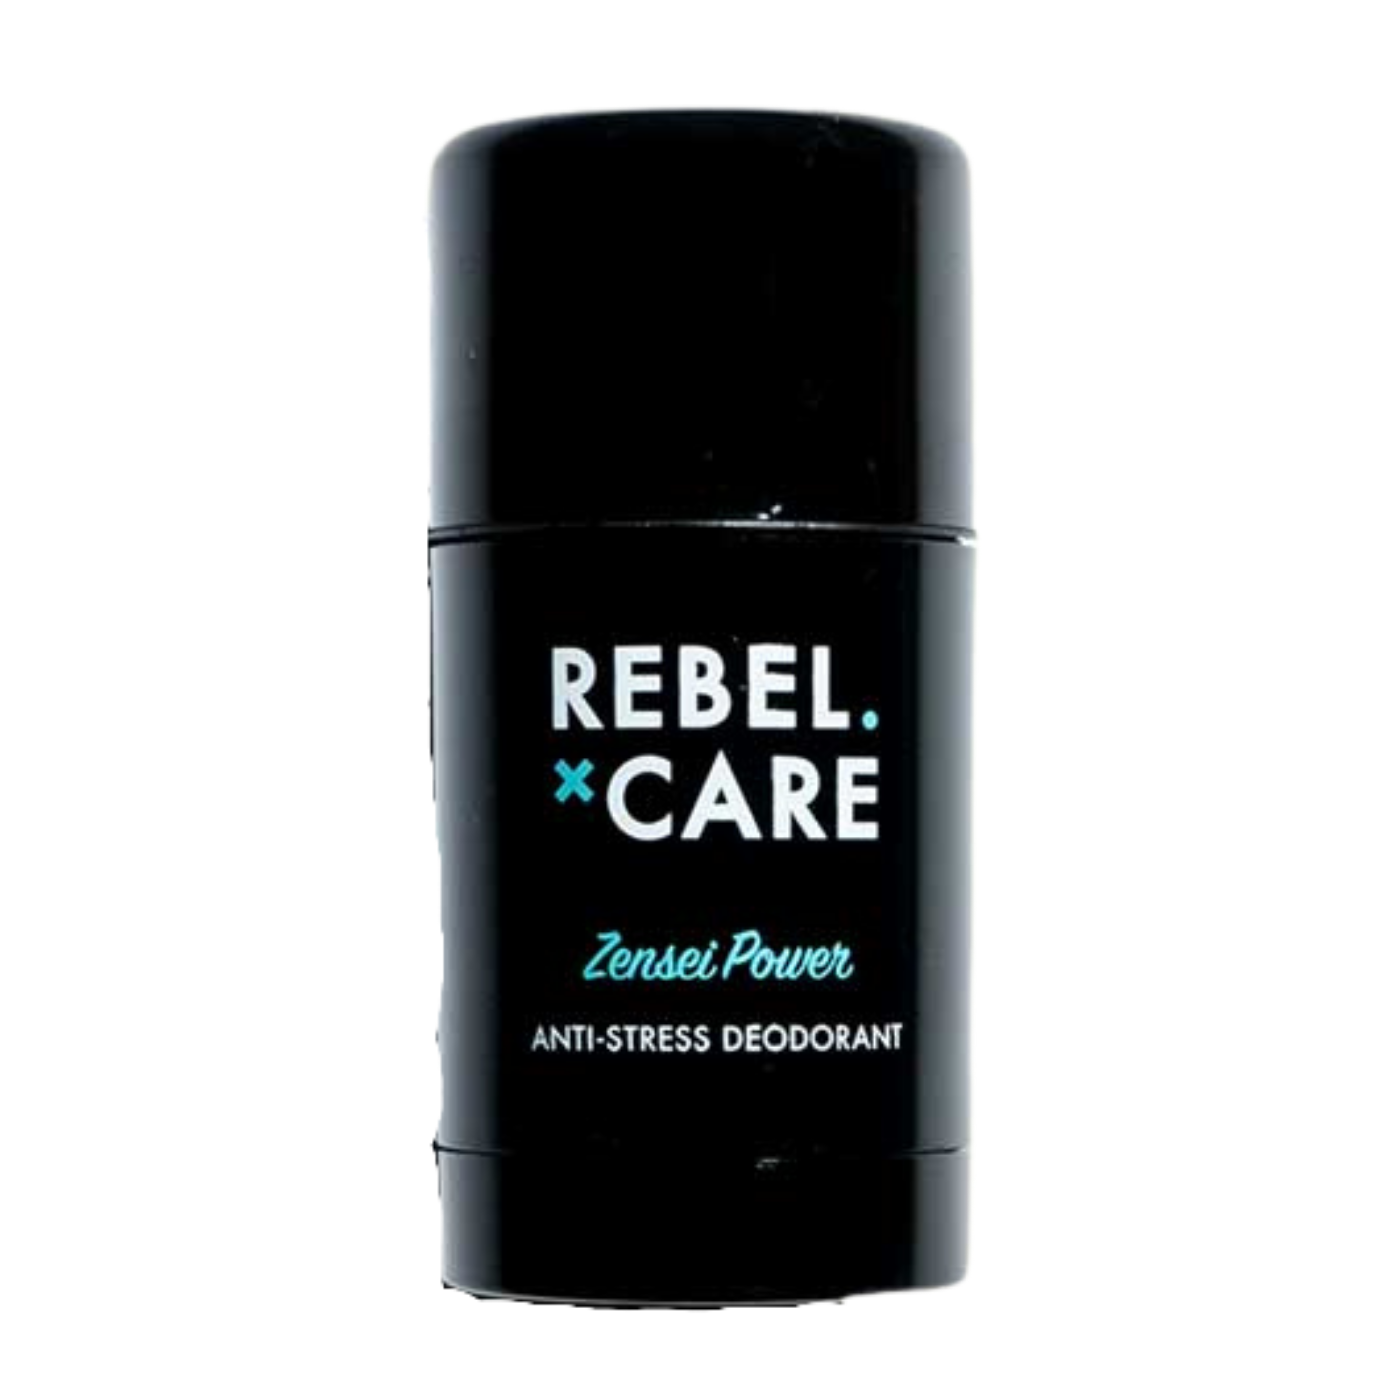 Rebel Care Deodorant Zensei Power vegan Naturkosmetik MÃ¤nnerpflege